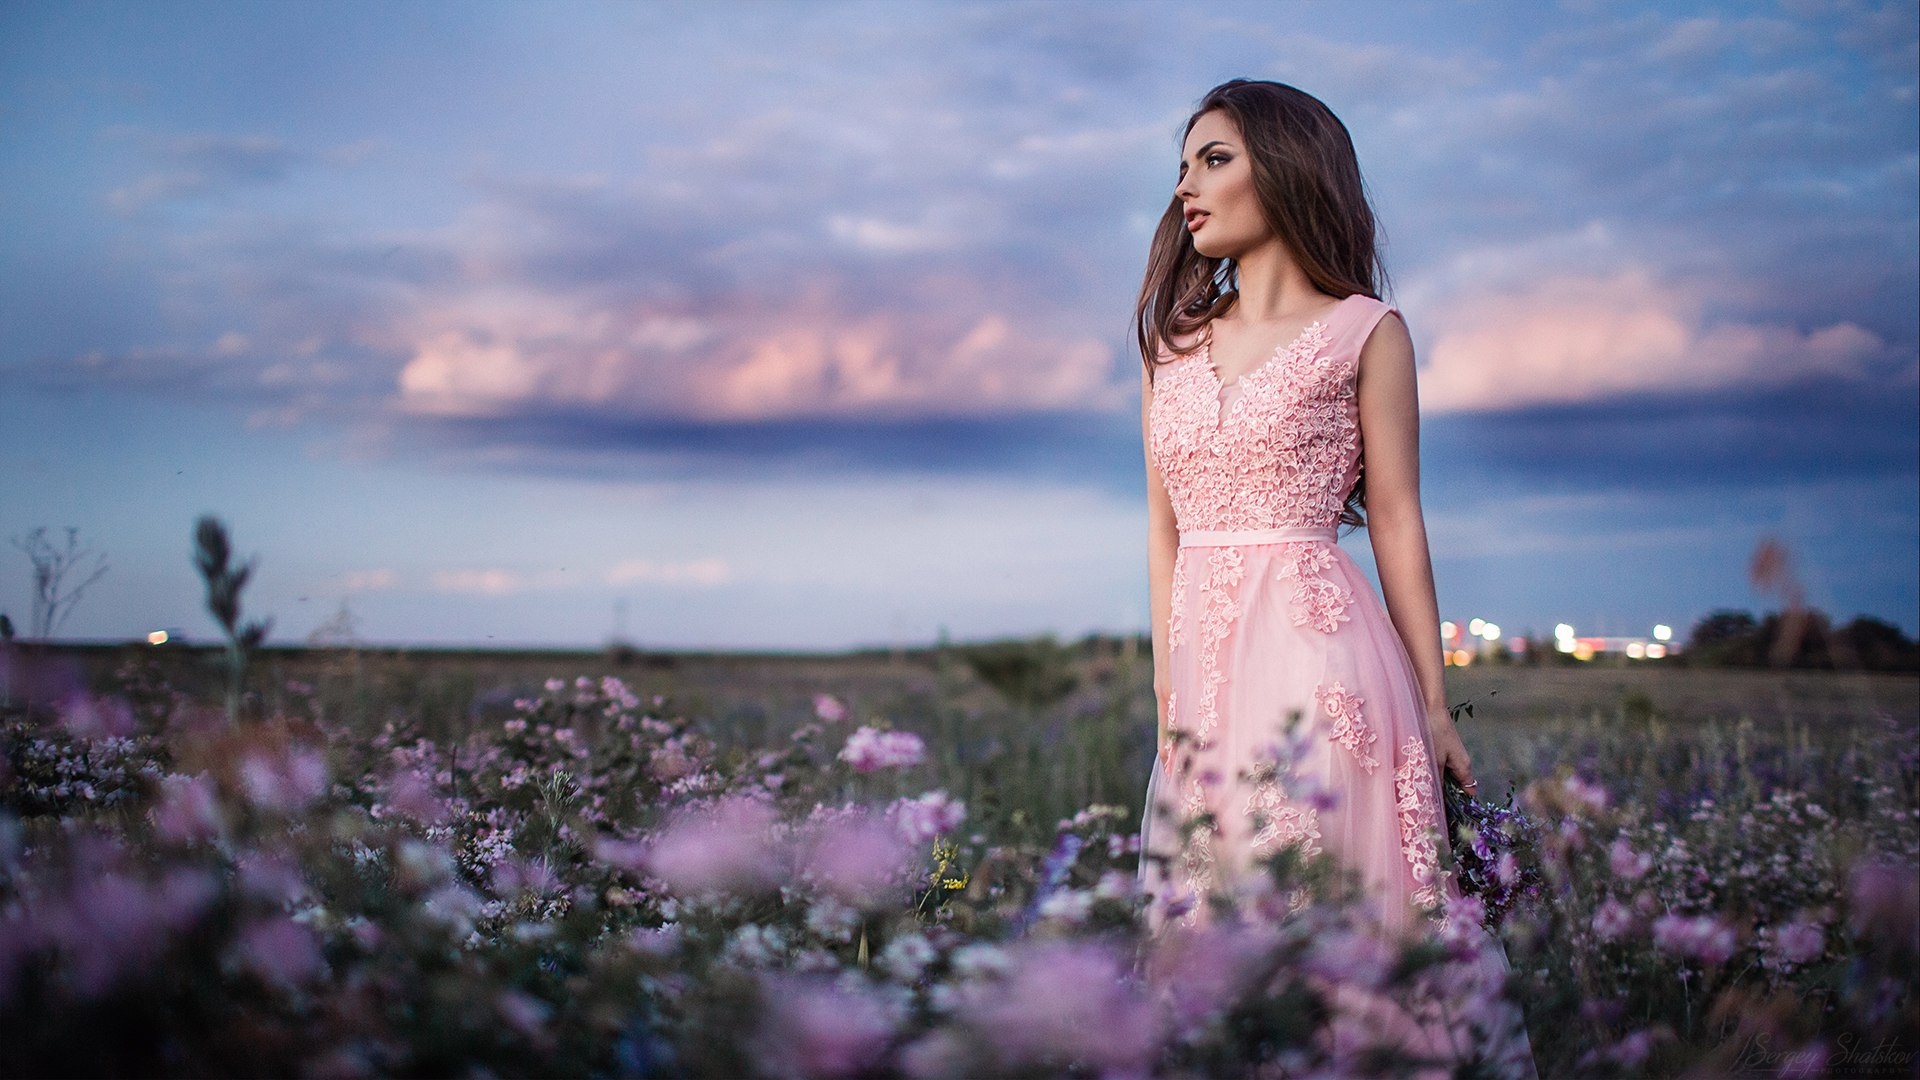 Download Brunette Pink Dress Depth Of Field Woman Model Hd Wallpaper By Sergey Shatskov 